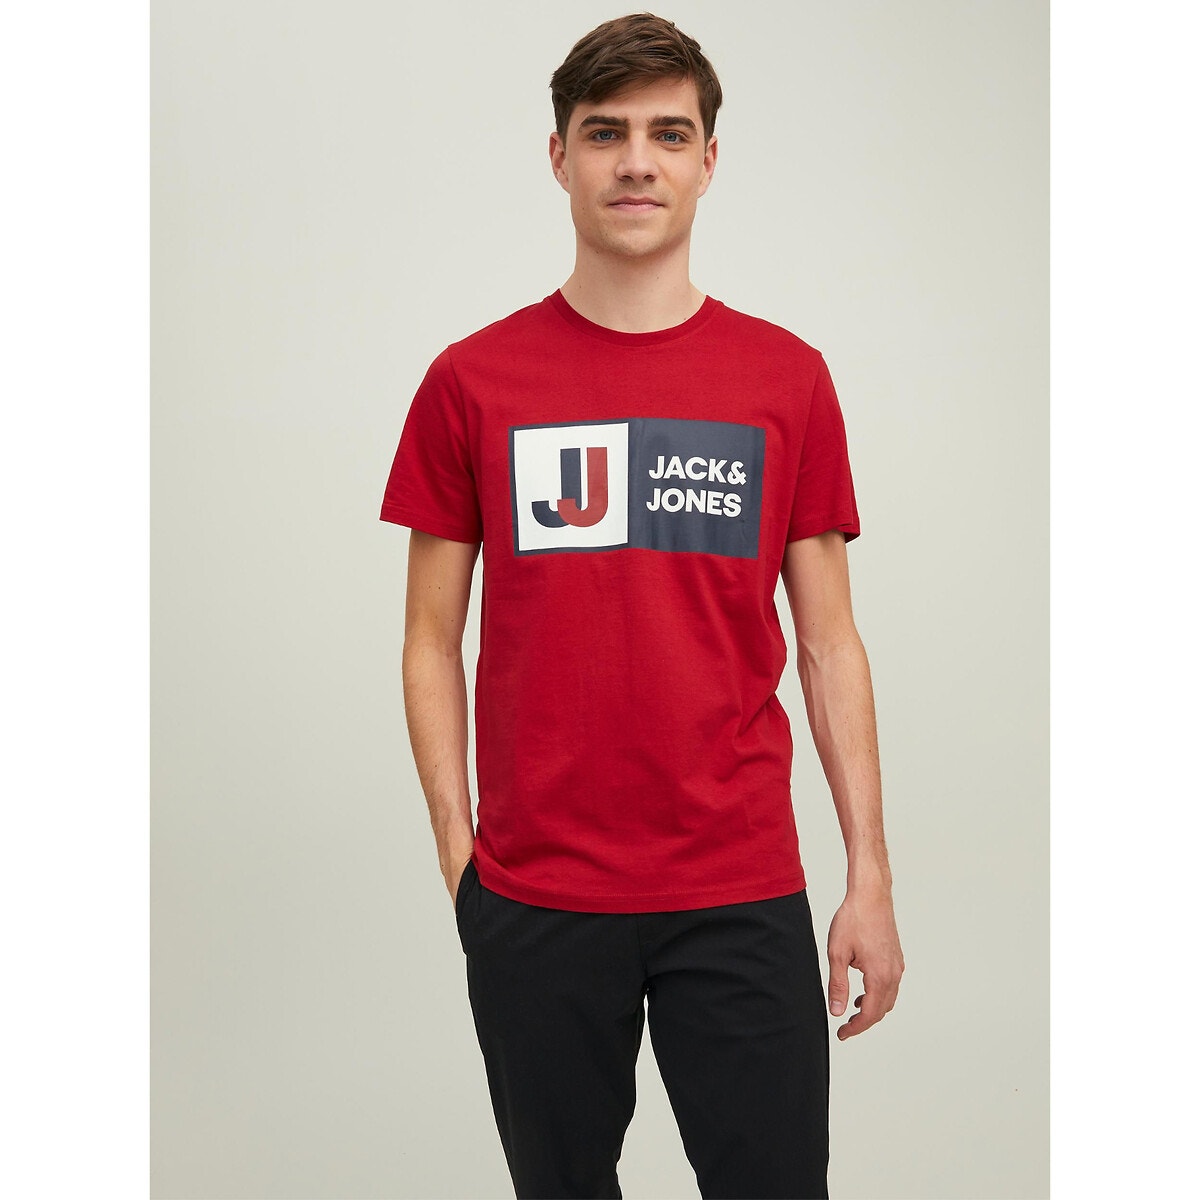 Κοντομάνικο T-shirt, Jcologan